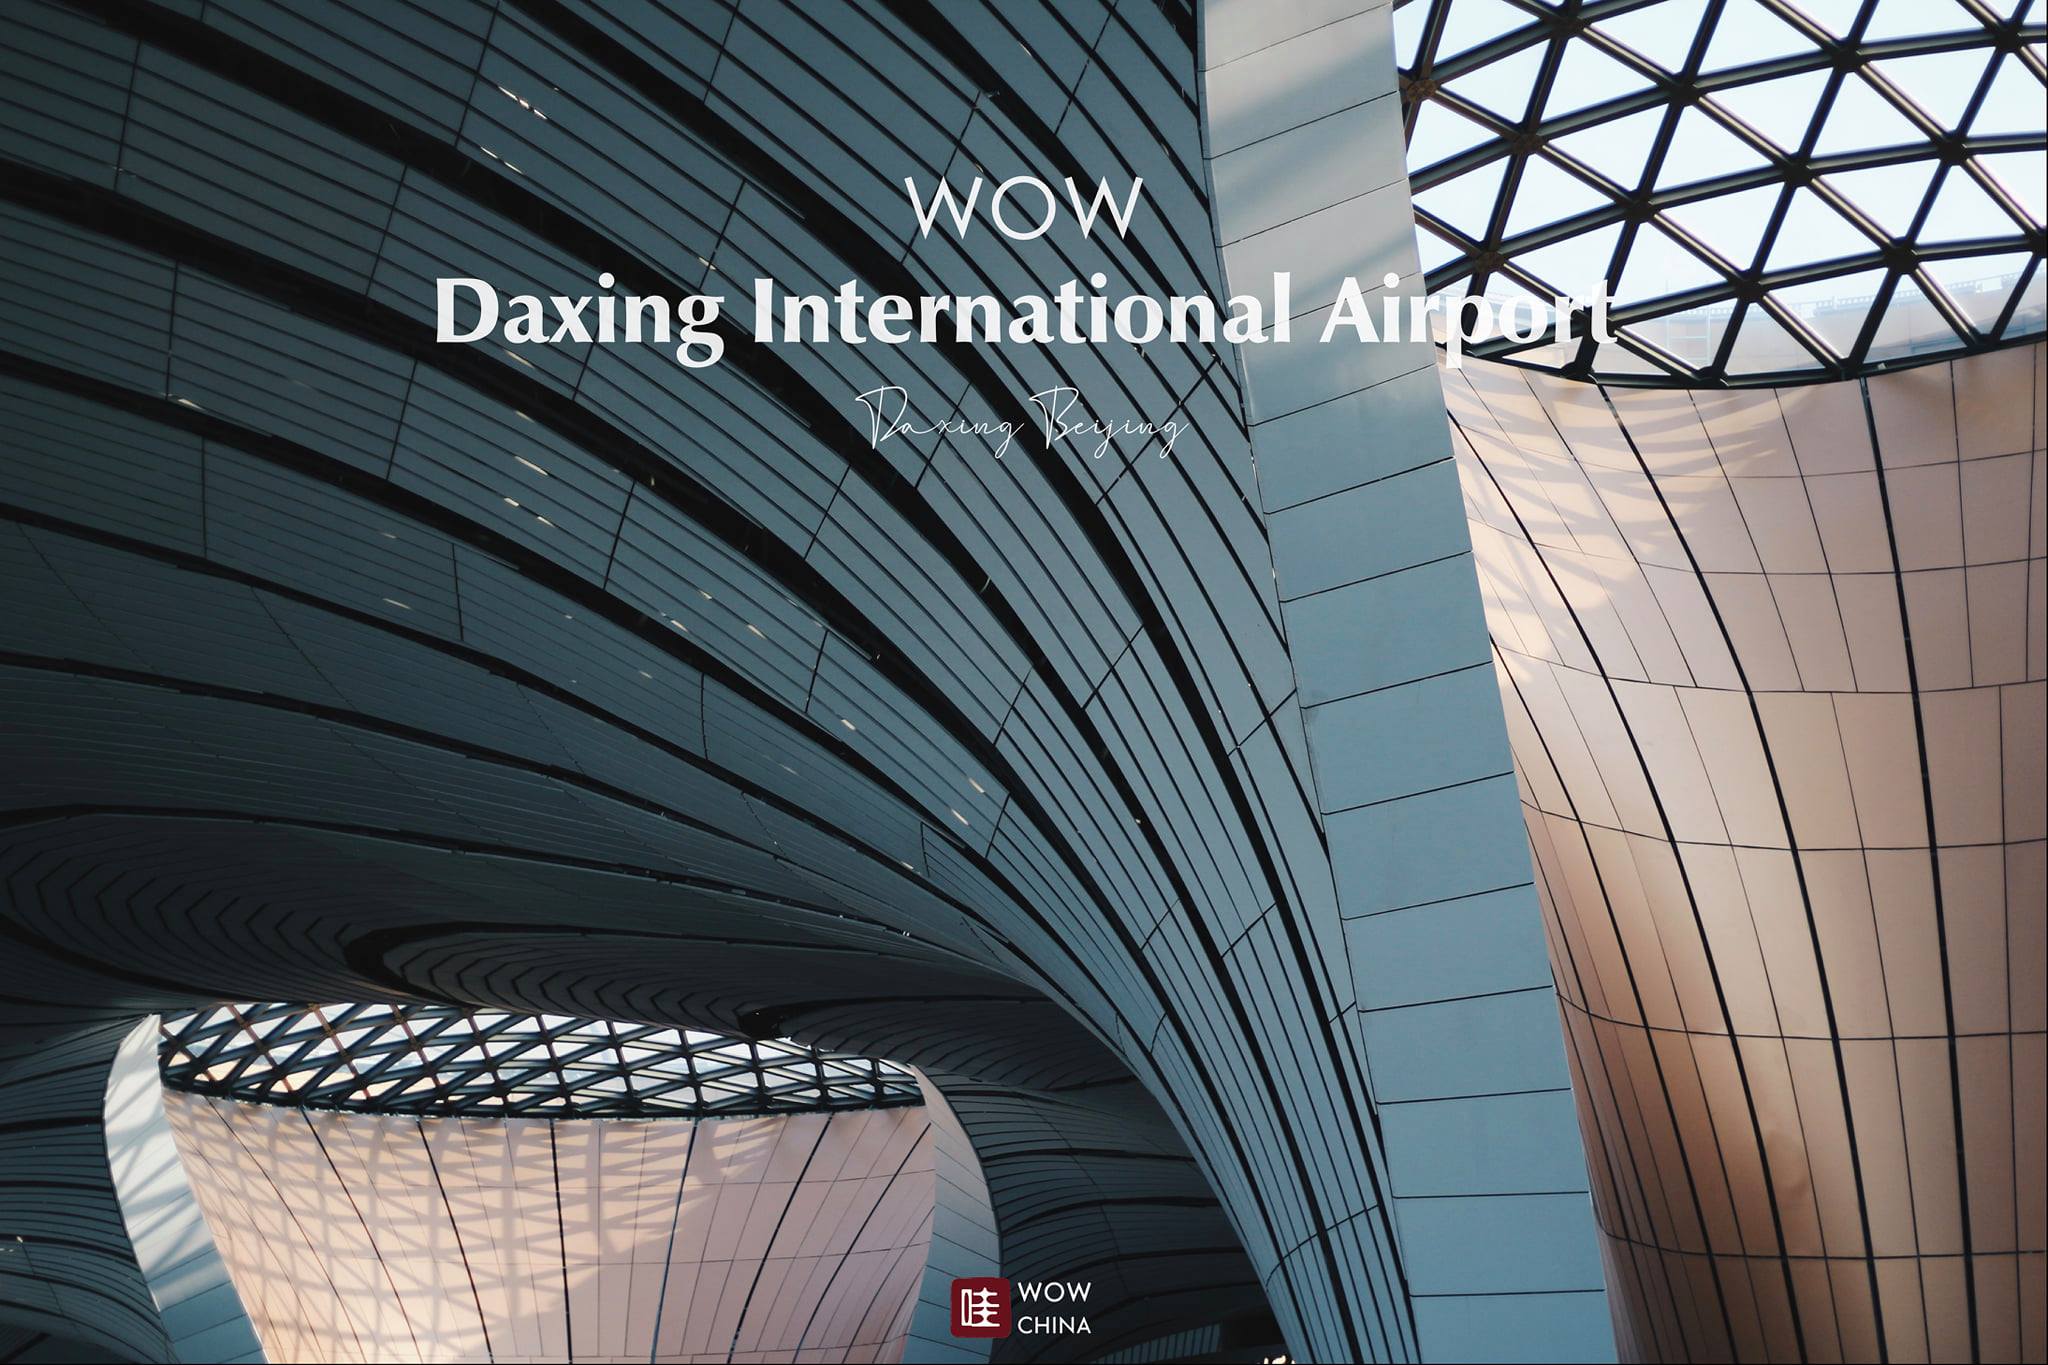 1 ใน 3 สนามบินสุด #WOW ที่ใหญ่ที่สุดในโลก
สนามบินนานาชาติต้าซิงแห่งกรุงปักกิ่ง
….